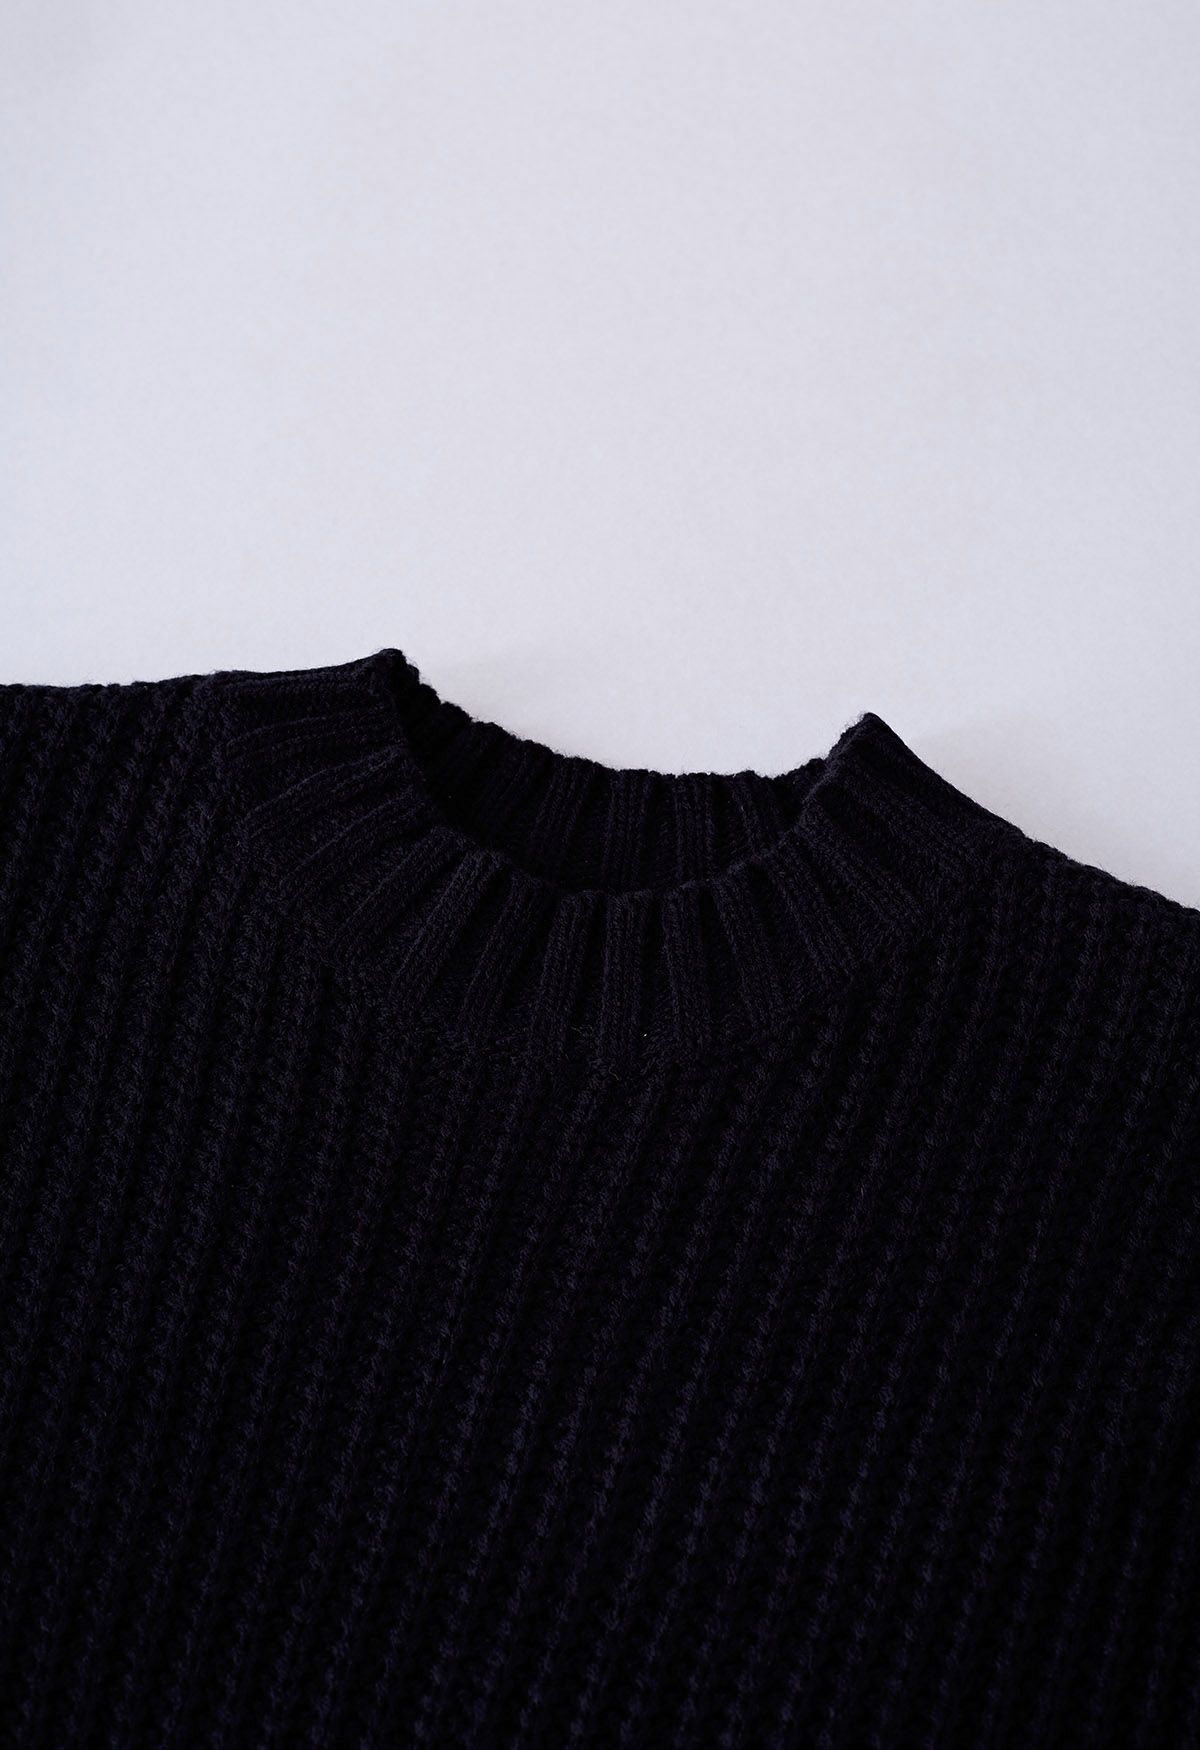 Suéter corto con mangas abullonadas y puntos juguetones en negro